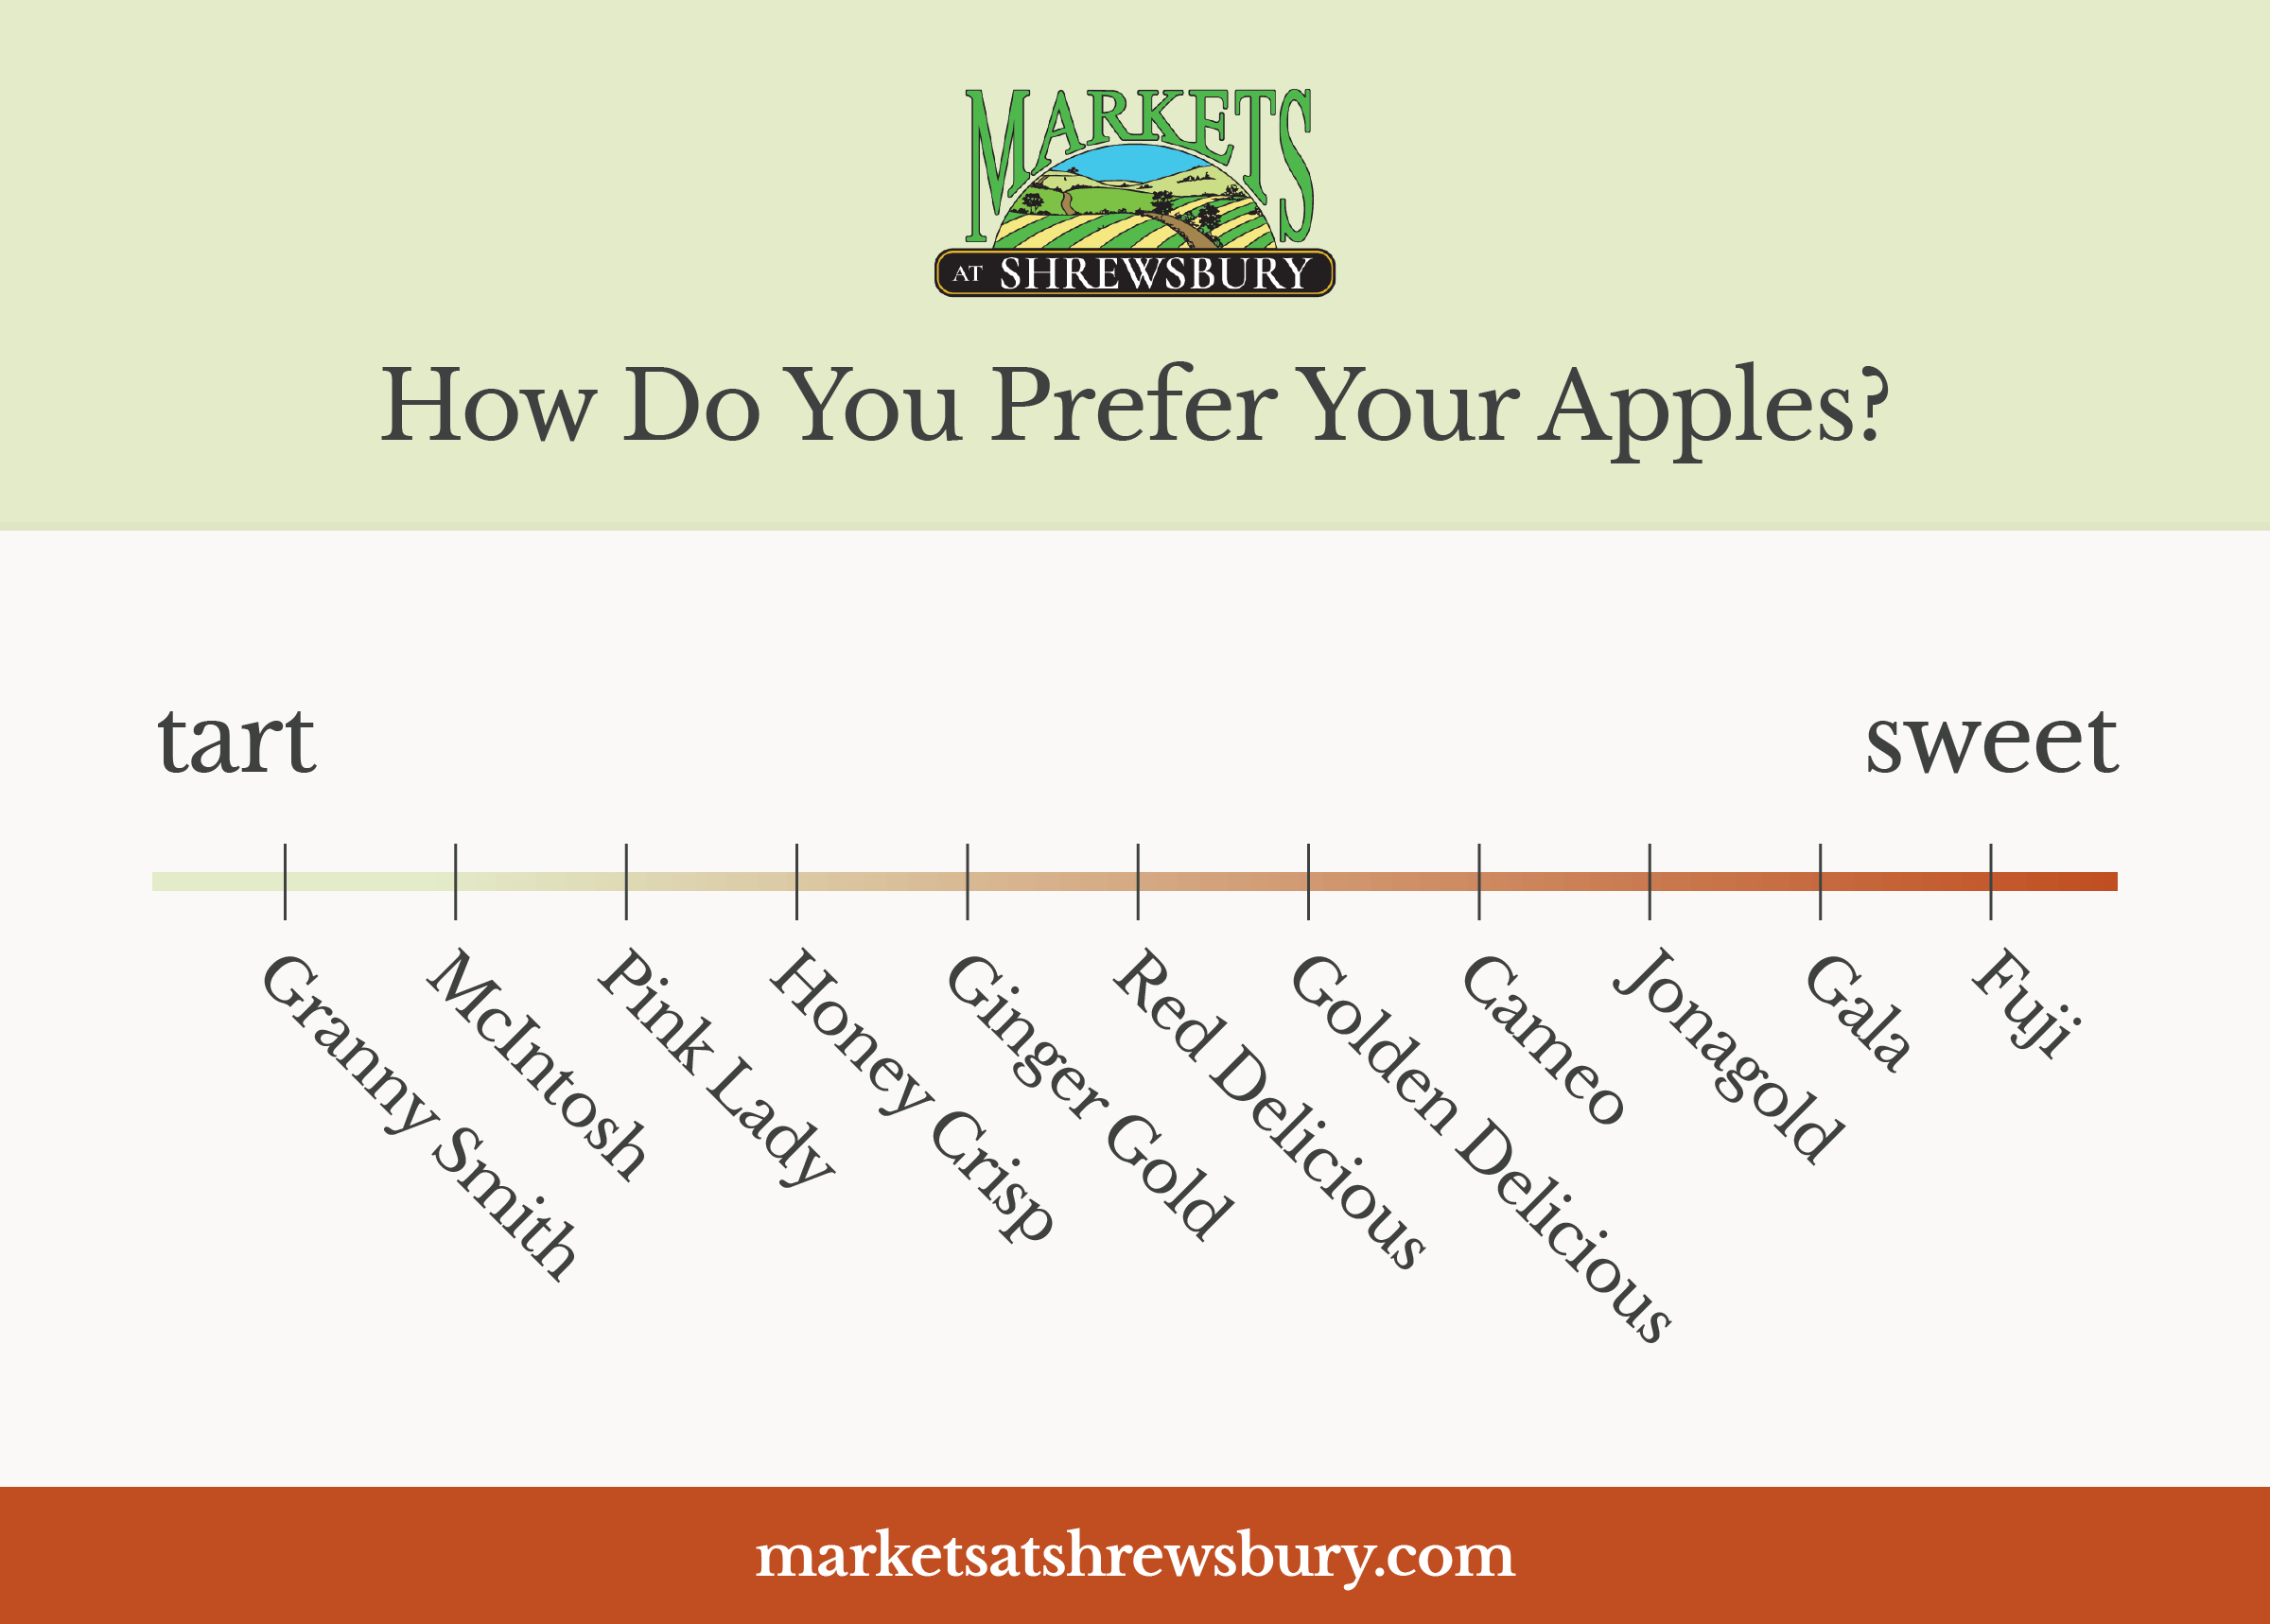 https://www.marketsatshrewsbury.com/wp-content/uploads/2018/09/mkts-apple-varieties-graphic-01.png